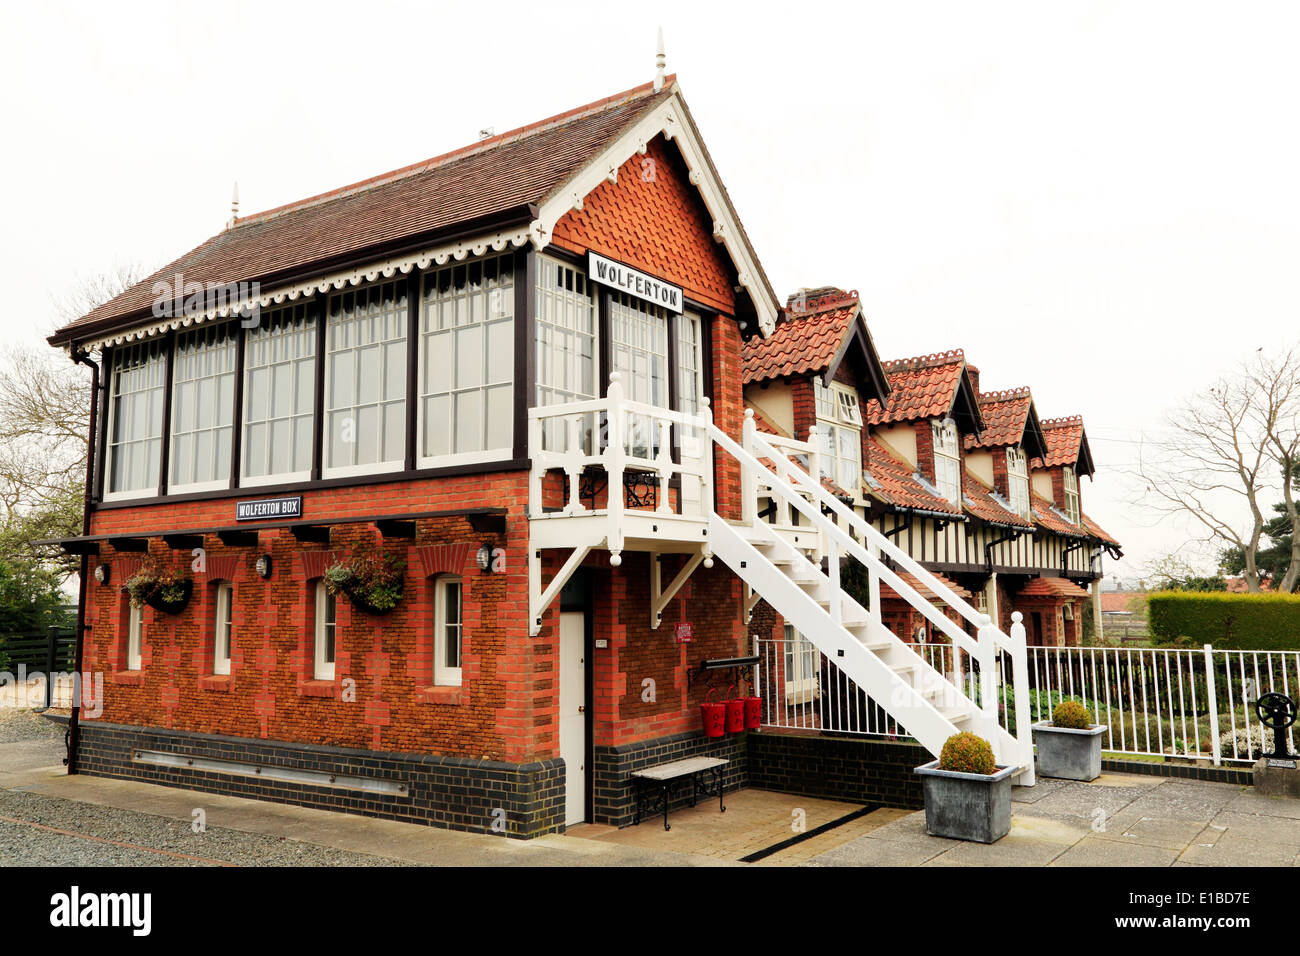 Wolferton, The Royal Railway Station Norfolk, England UK, erhaltenen 19. Jahrhundert Englisch-Stationen Gebäude Gebäude Stellwerk Stockfoto